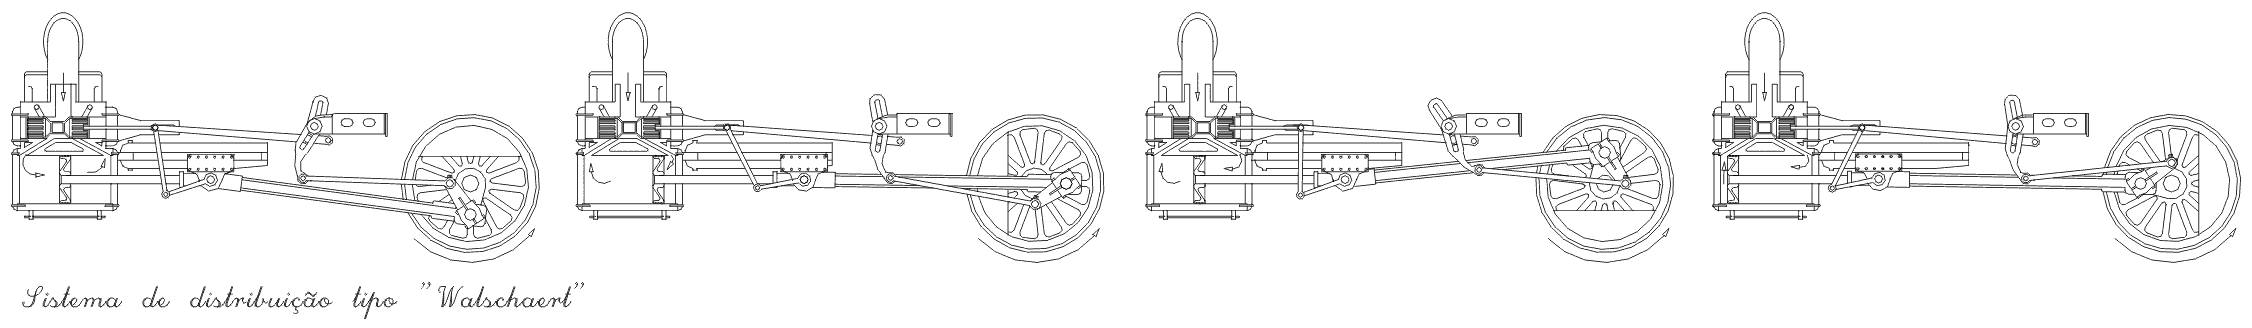 Desenho detalhado do sistema de transmissão Walschaert